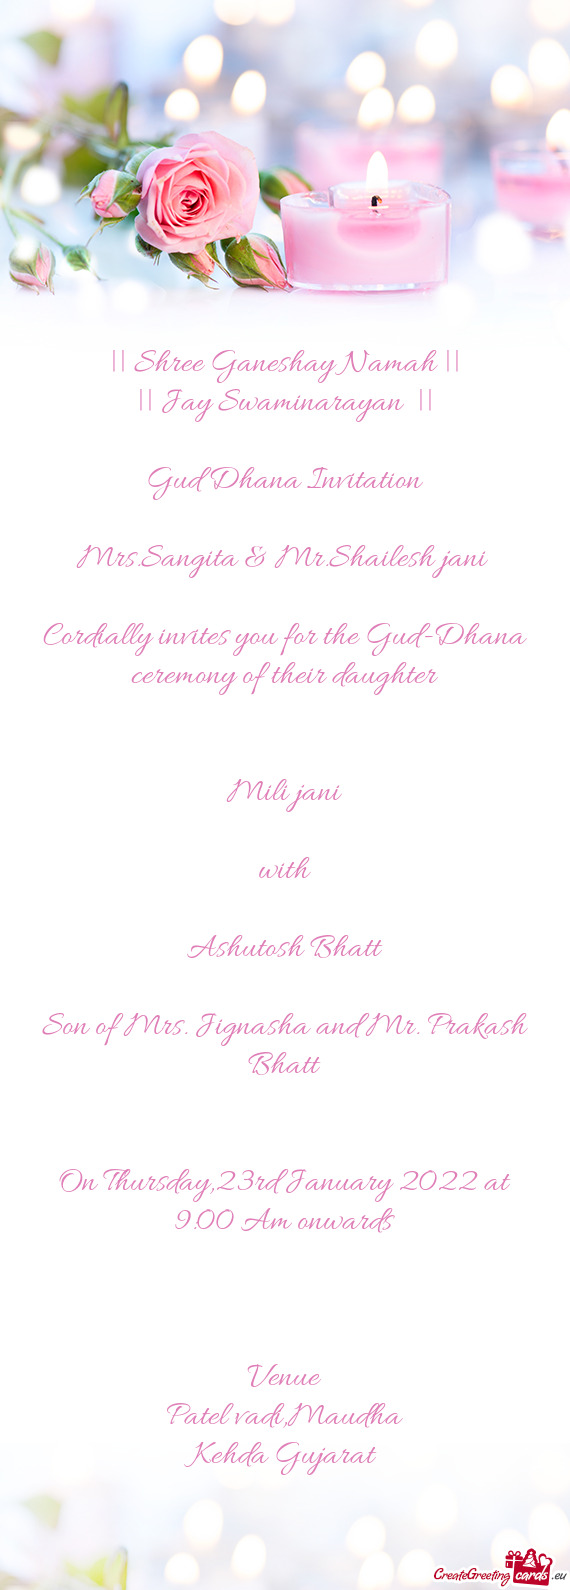 || Shree Ganeshay Namah ||
 || Jay Swaminarayan ||
 
 Gud Dhana Invitation
 
 Mrs